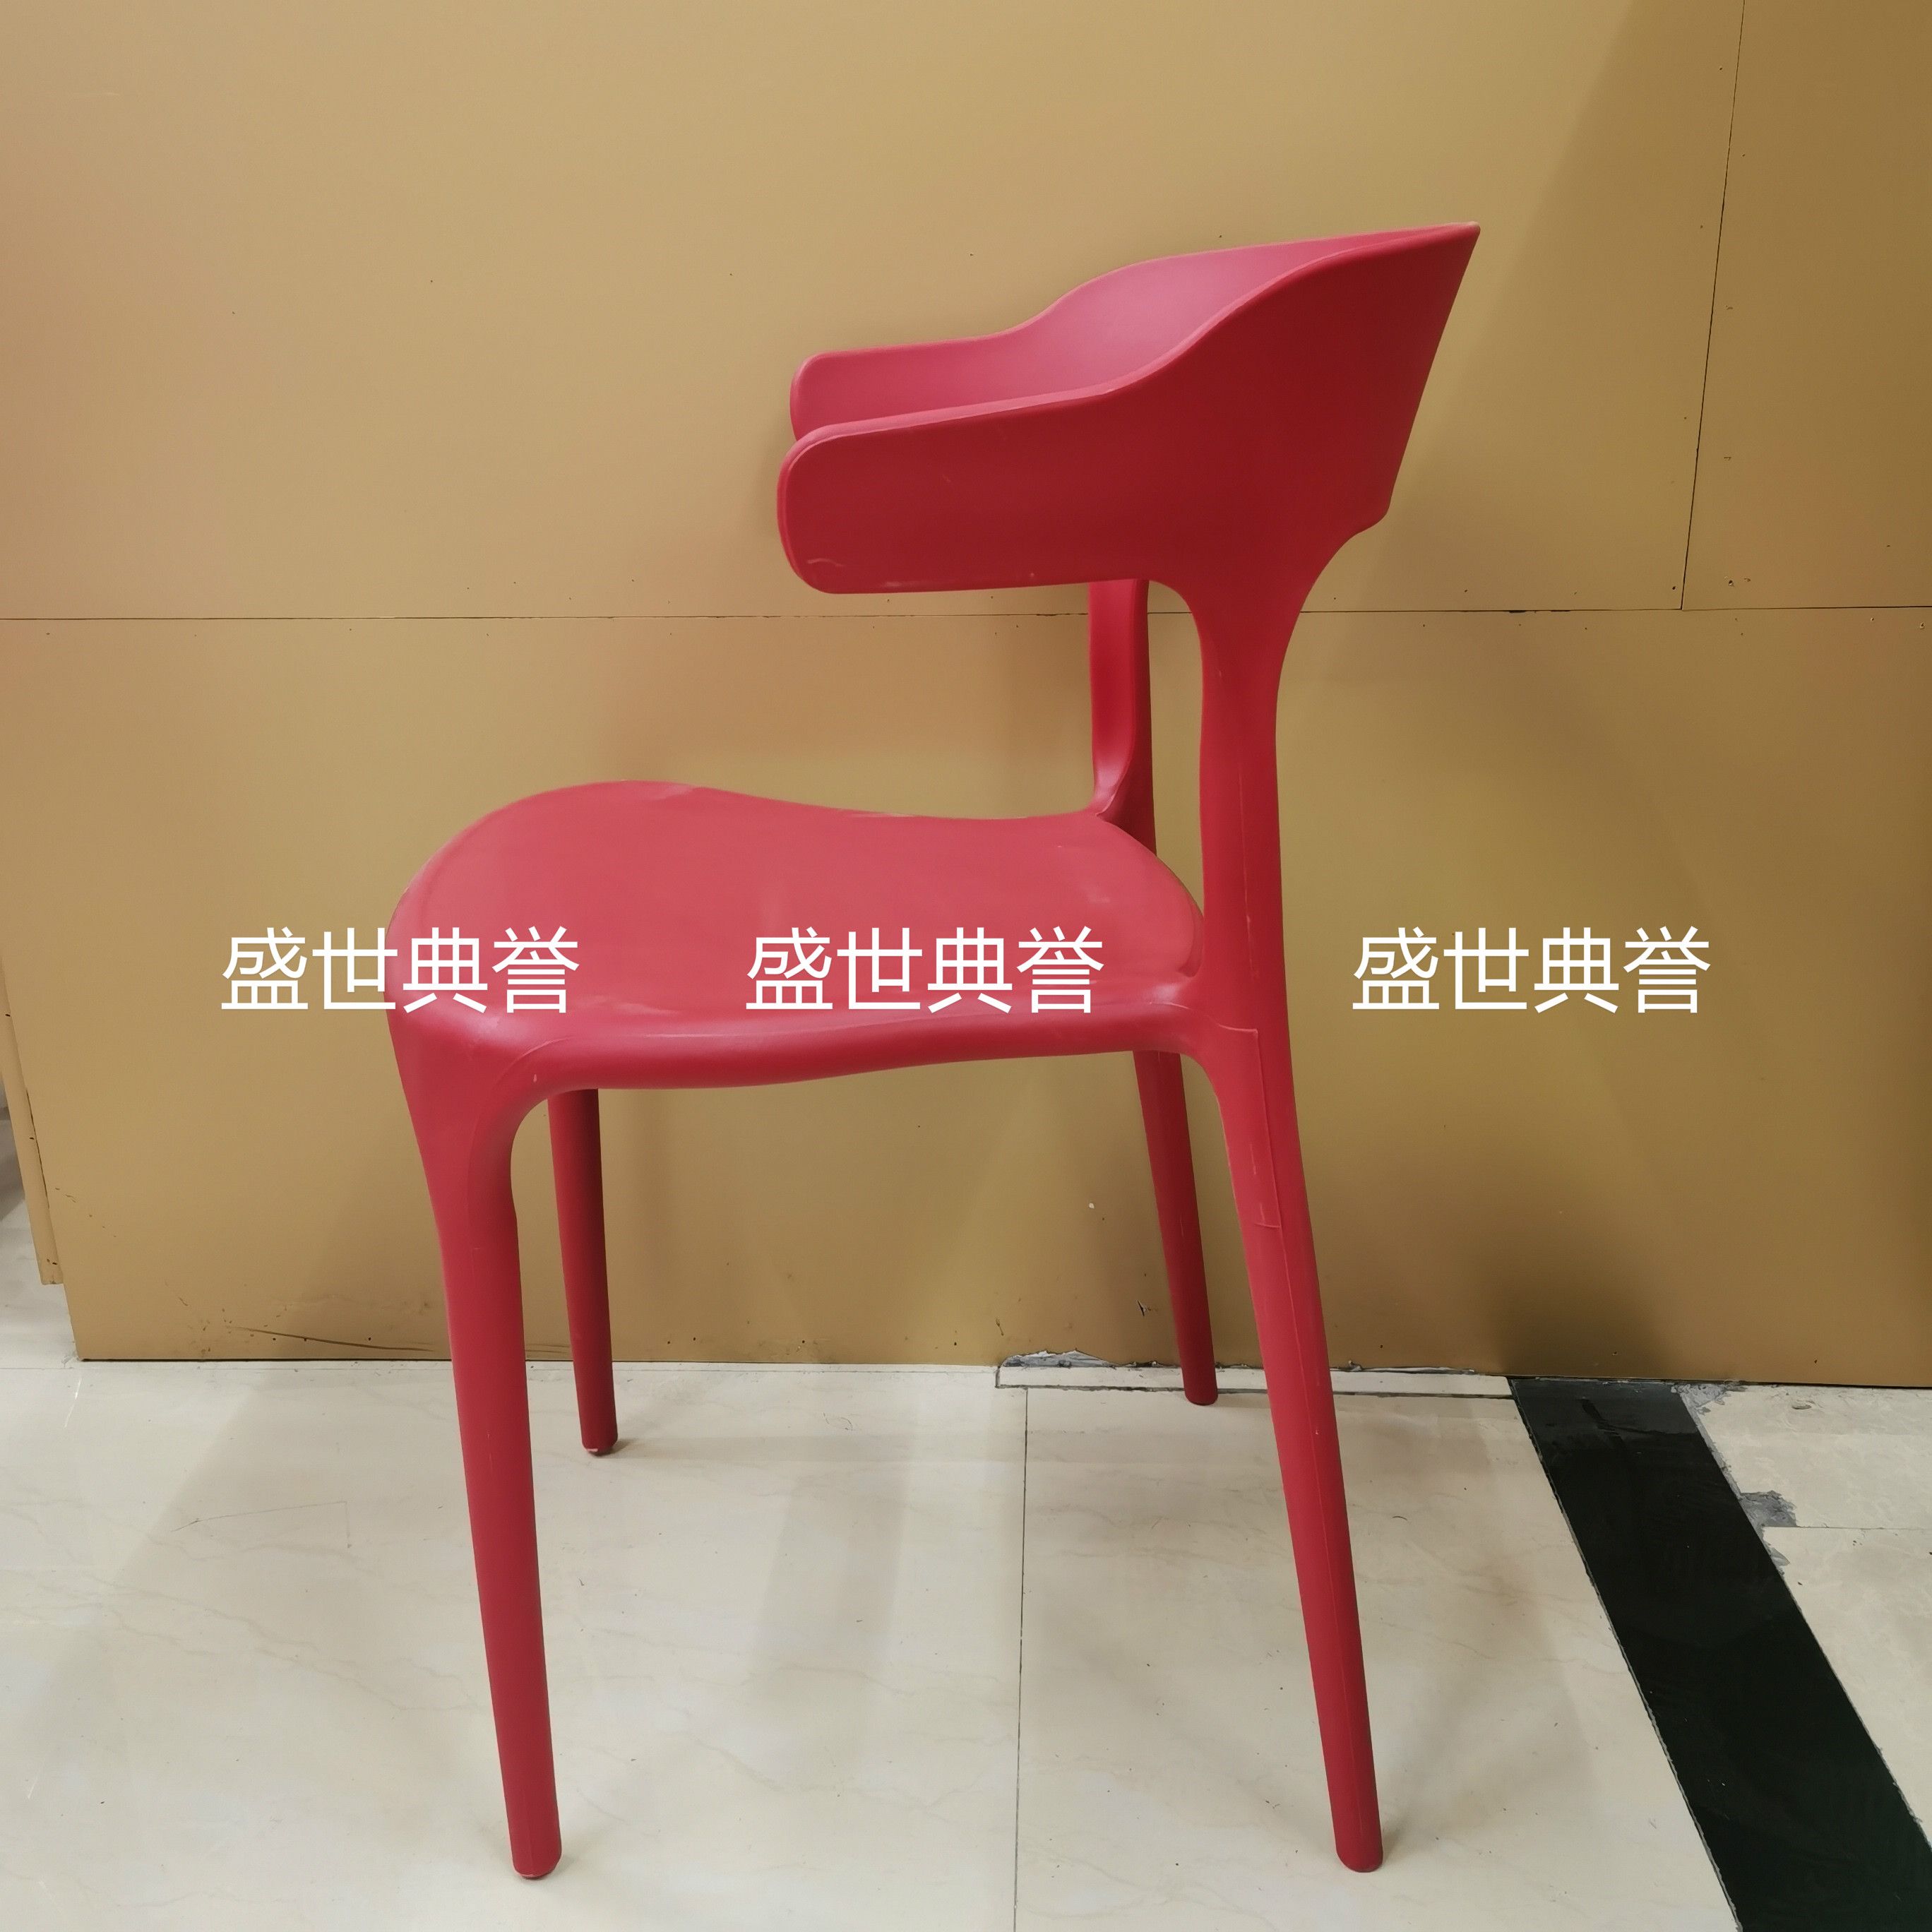 广州外贸批发户外婚礼椅子婚庆塑料折叠椅主题餐厅北欧时尚餐椅细节图